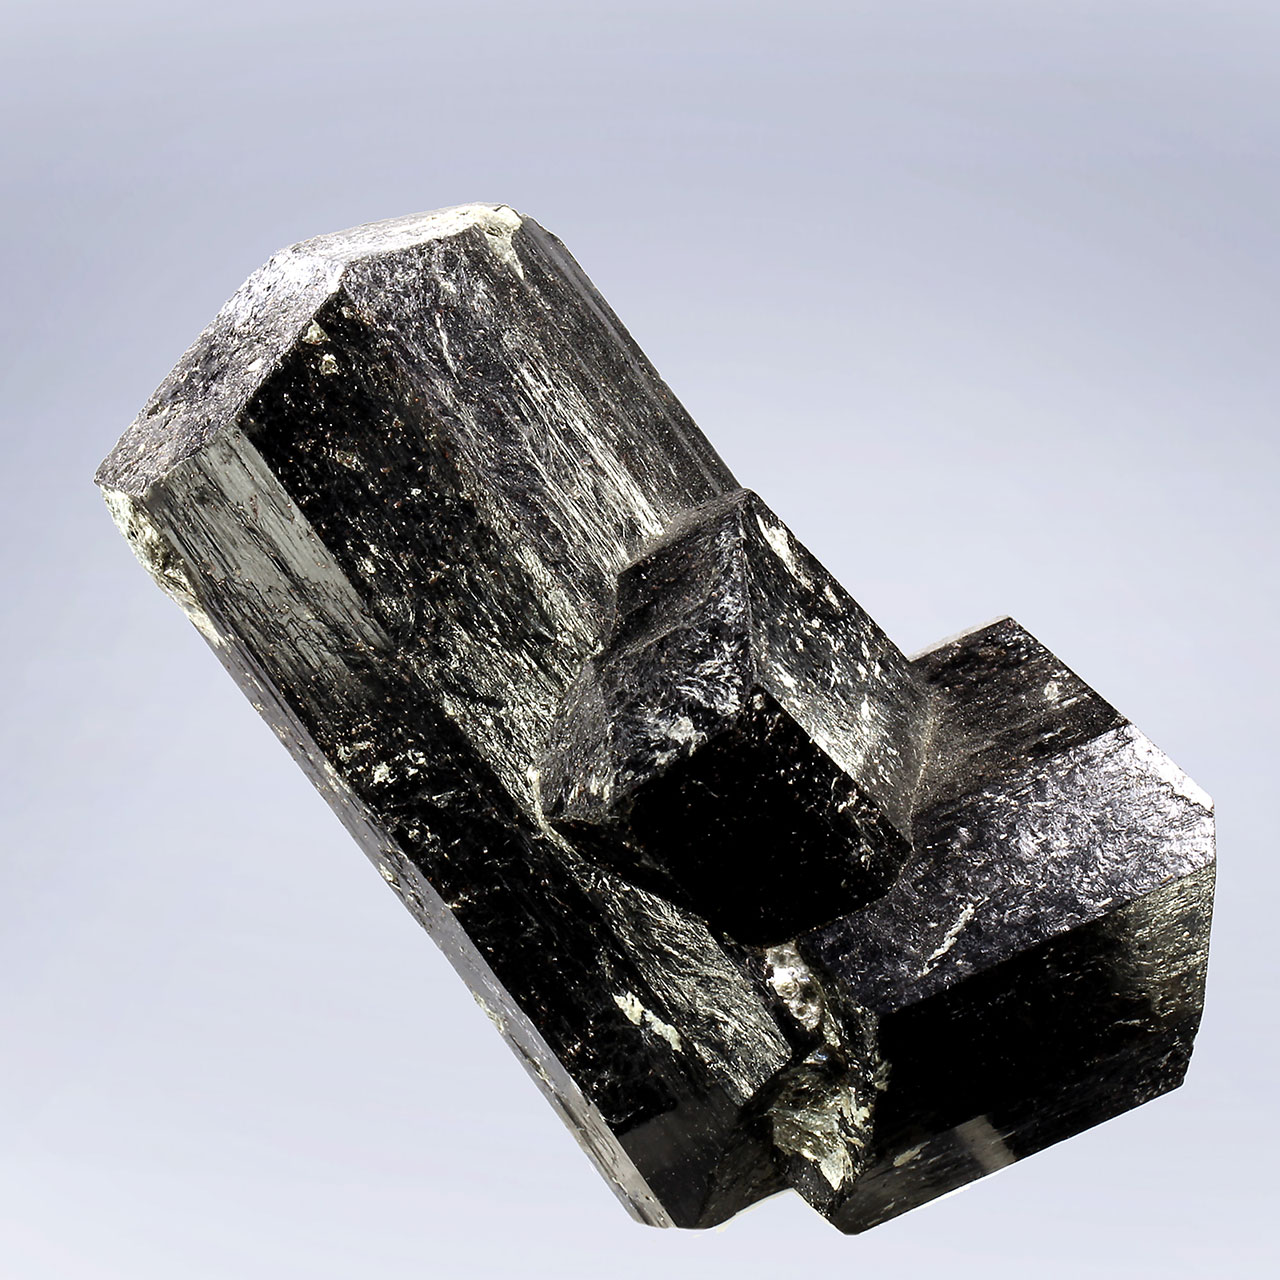 Dark dravite crystal from Serra Branca, Rio Grande do Norte, Brazil.